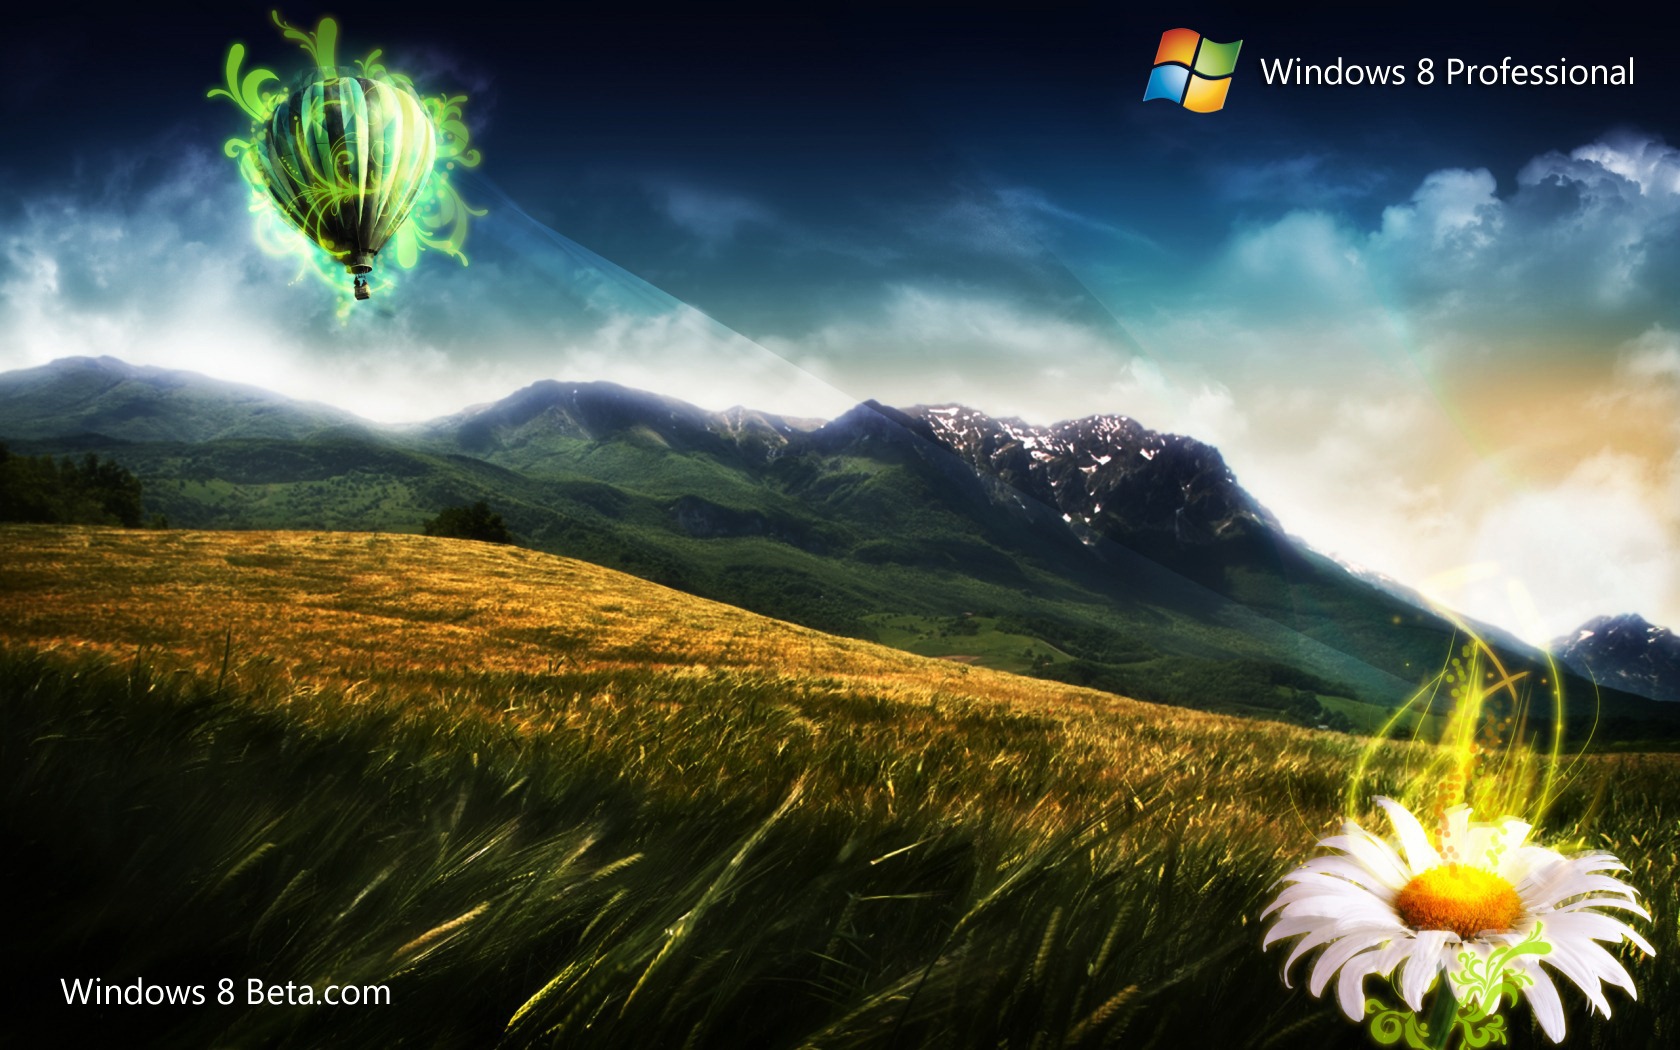 Hình nền Natural Windows 8 sẽ mang đến cho bạn cảm giác hòa mình với thiên nhiên và tràn đầy năng lượng. Các hình ảnh về cảnh quan, rừng cây và động vật rất thú vị. Hãy cùng khám phá những điều tuyệt vời của thiên nhiên qua những bức hình nền này.